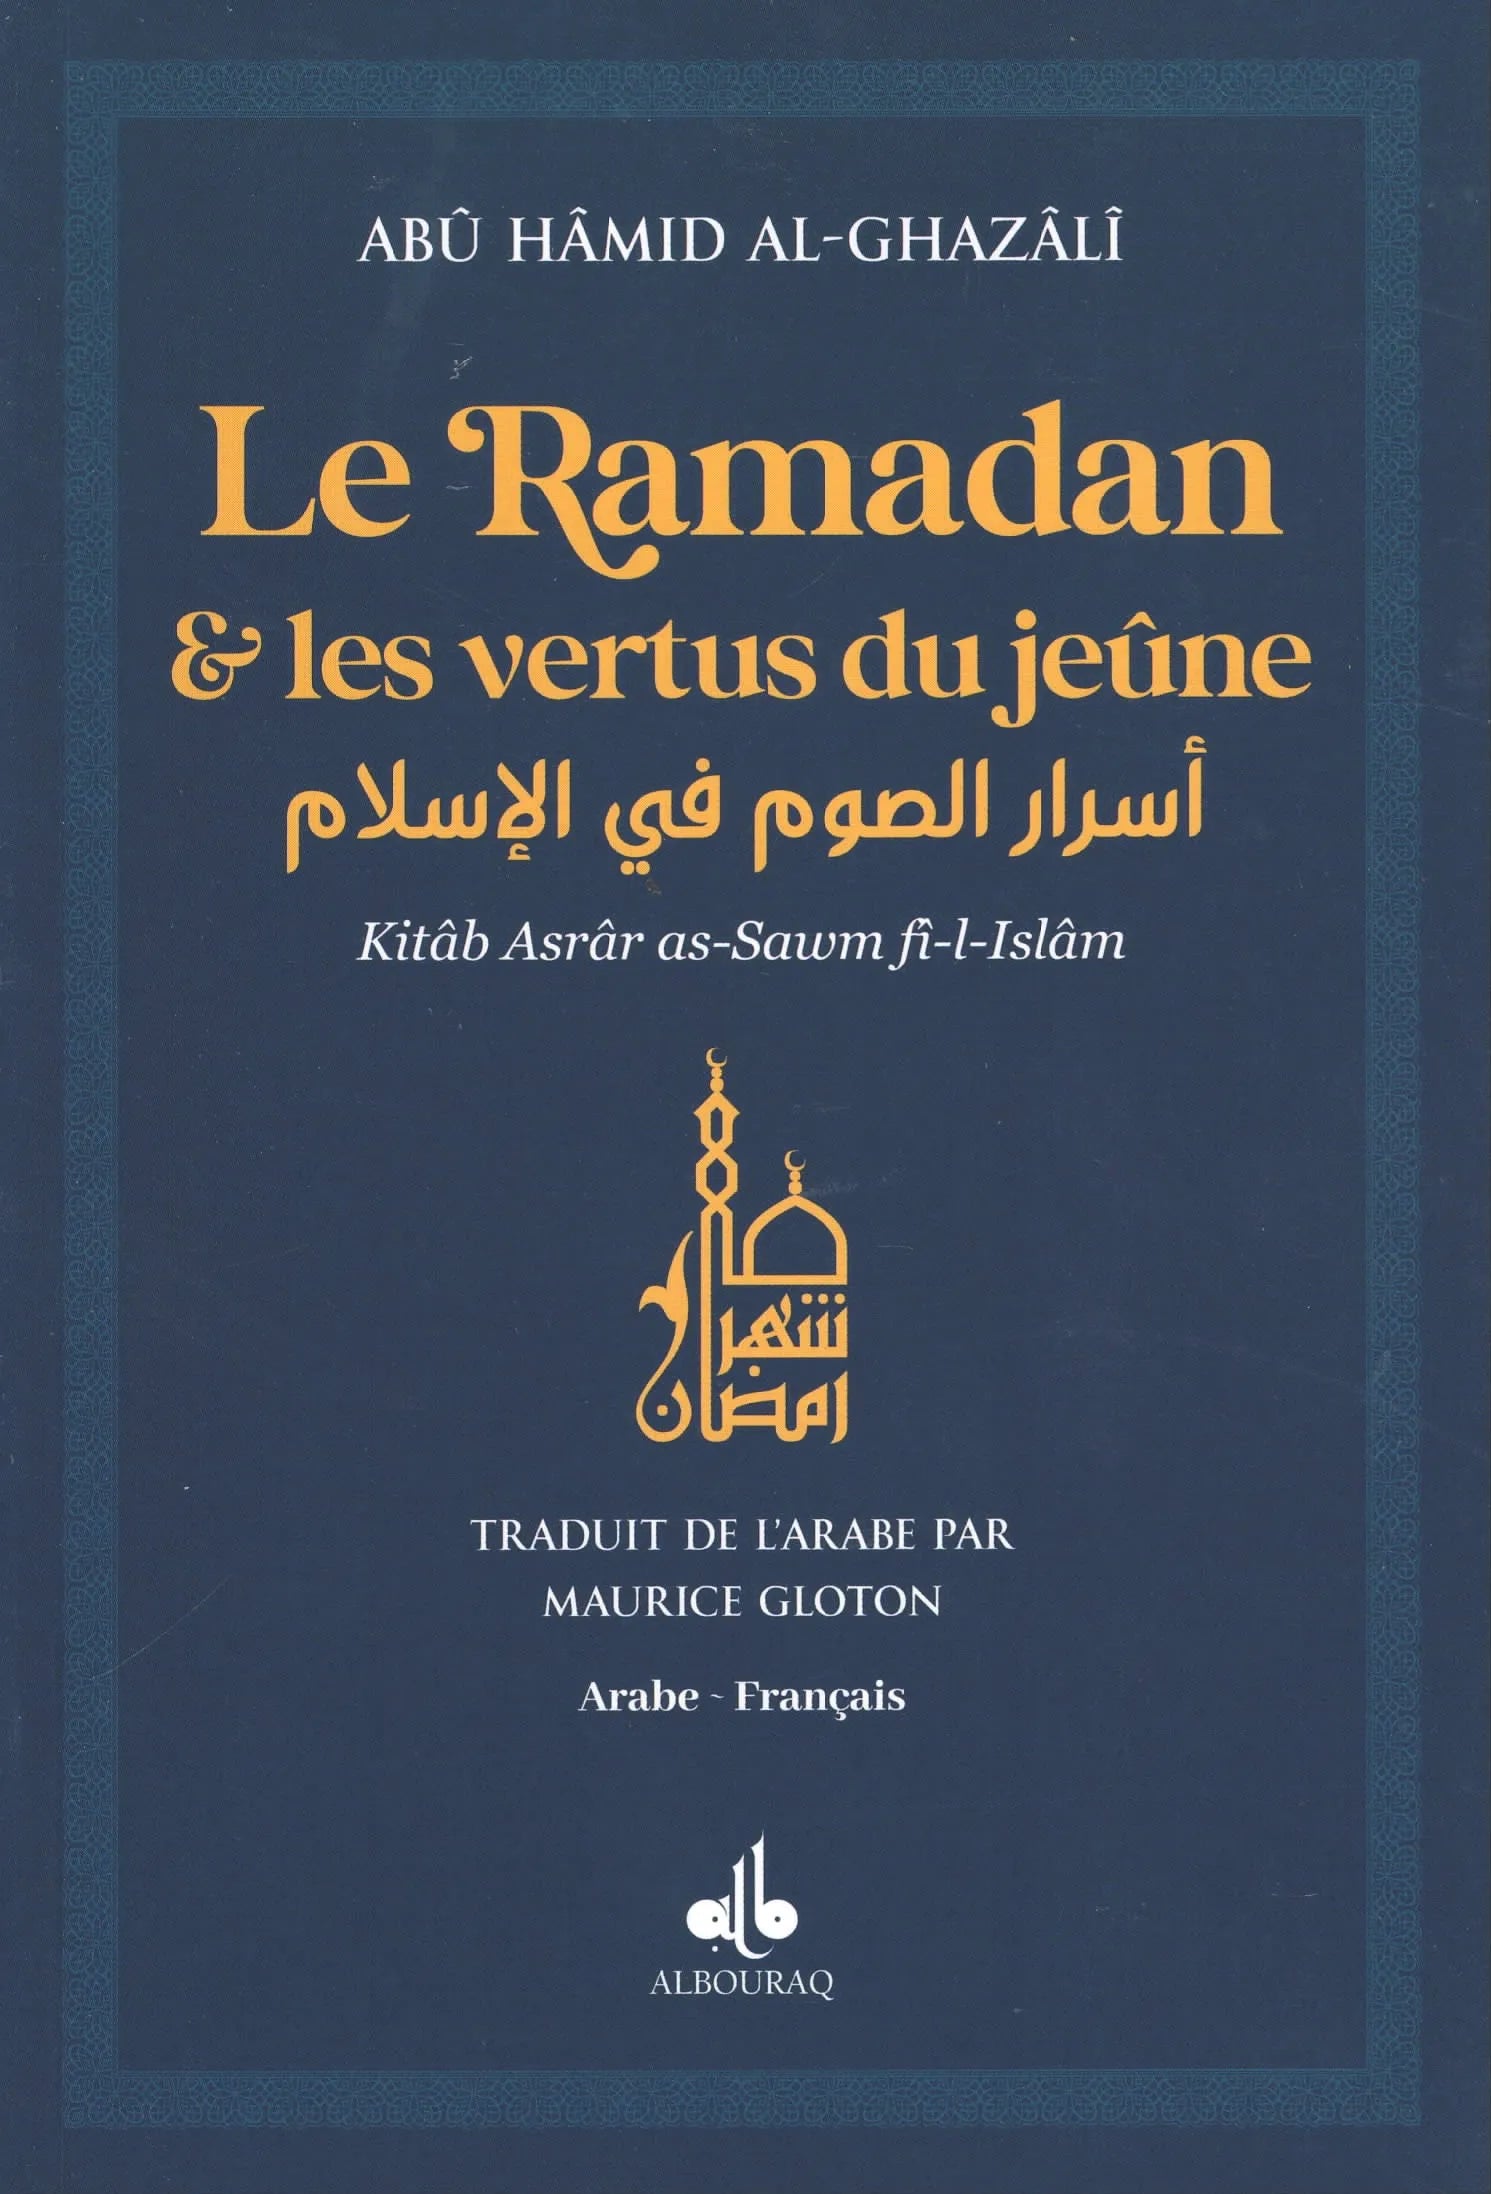 Le Ramadan & les vertus du jeûne par Abu Hamid Al-Ghazali Bleu Albouraq